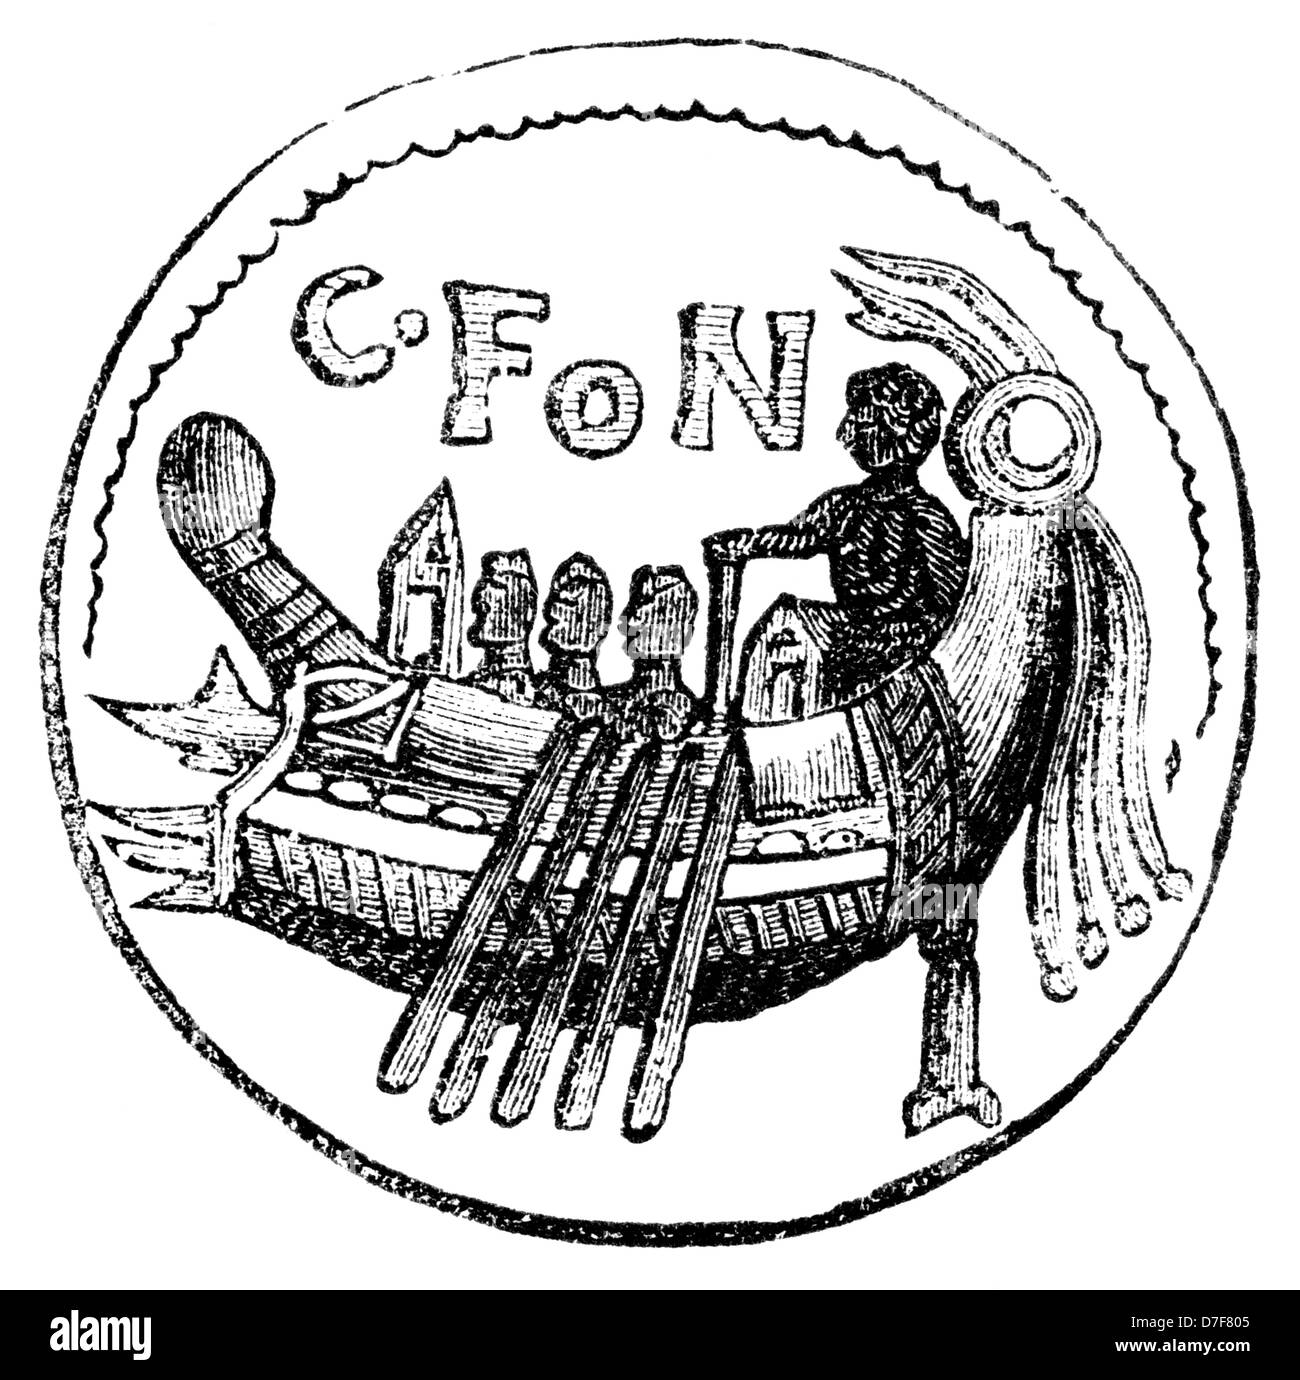 Eine der 1840er Jahre Holzschnitt oder Holzstich eine römische Münze gefunden in Großbritannien vertreten.  Die Münze zeigt eine Galeere und Ruderer. Stockfoto